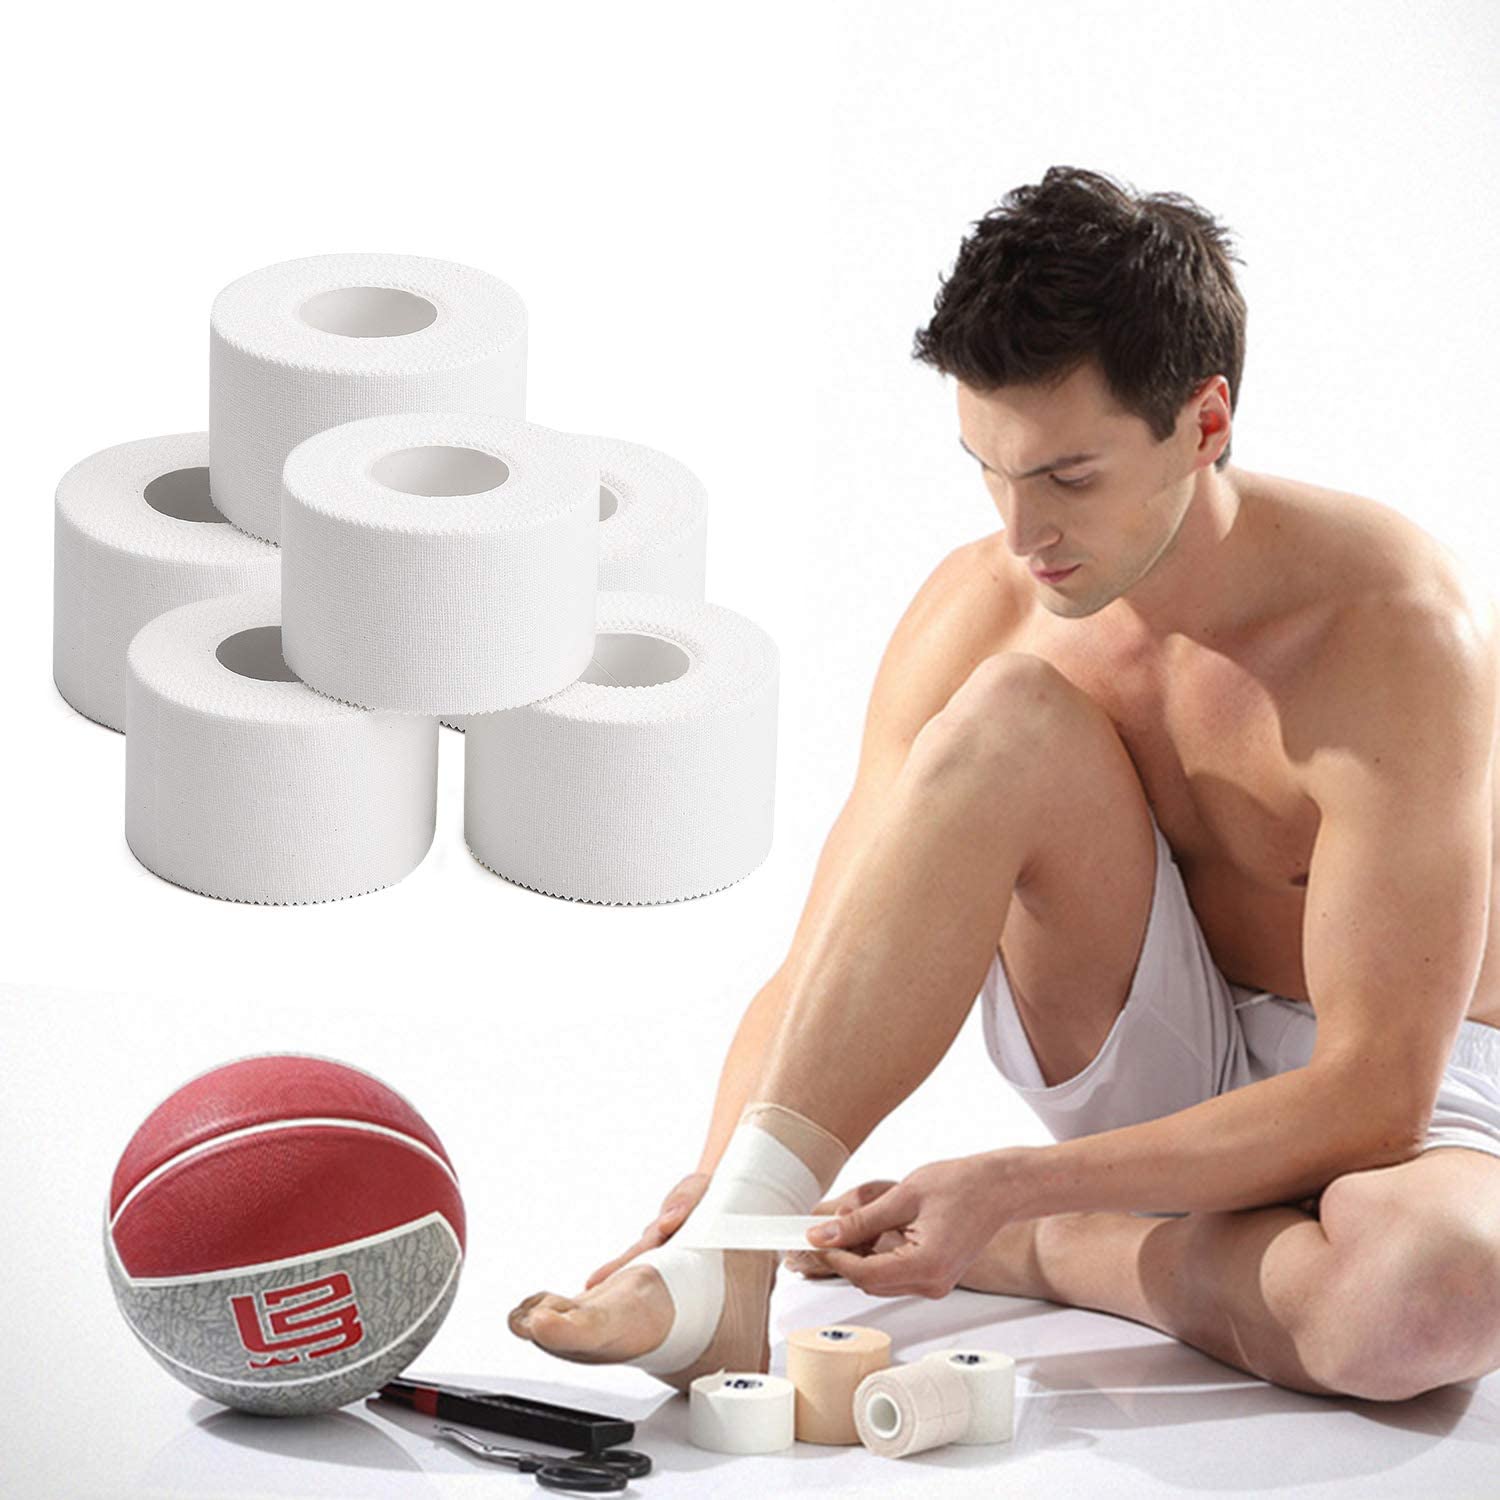 10 pakke atletisk tape i hvid bomuld sport tape klæbende elastisk bandage knæled håndled ankler muskelstøtte - let at rive